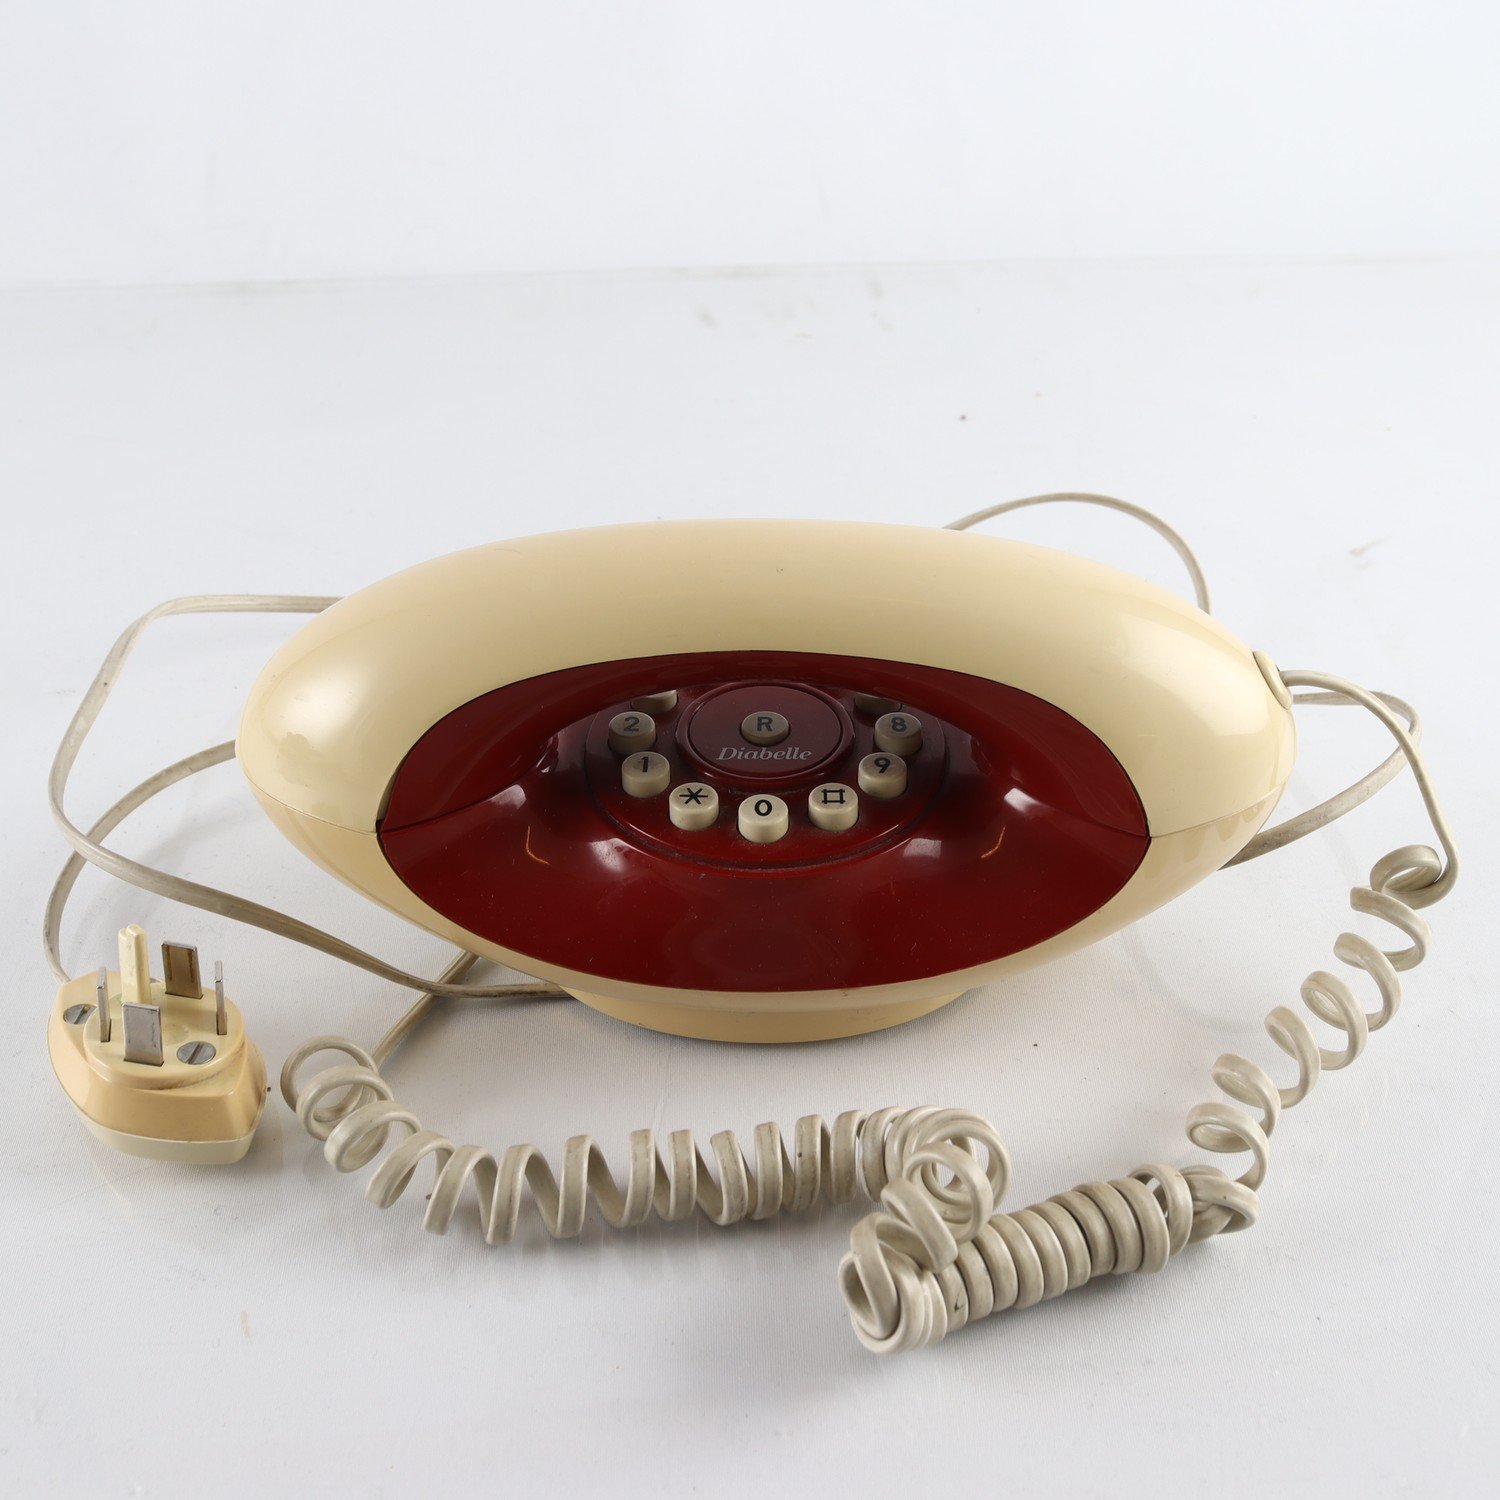 Telefon, American telecommunications, ’Diabelle’, vintage